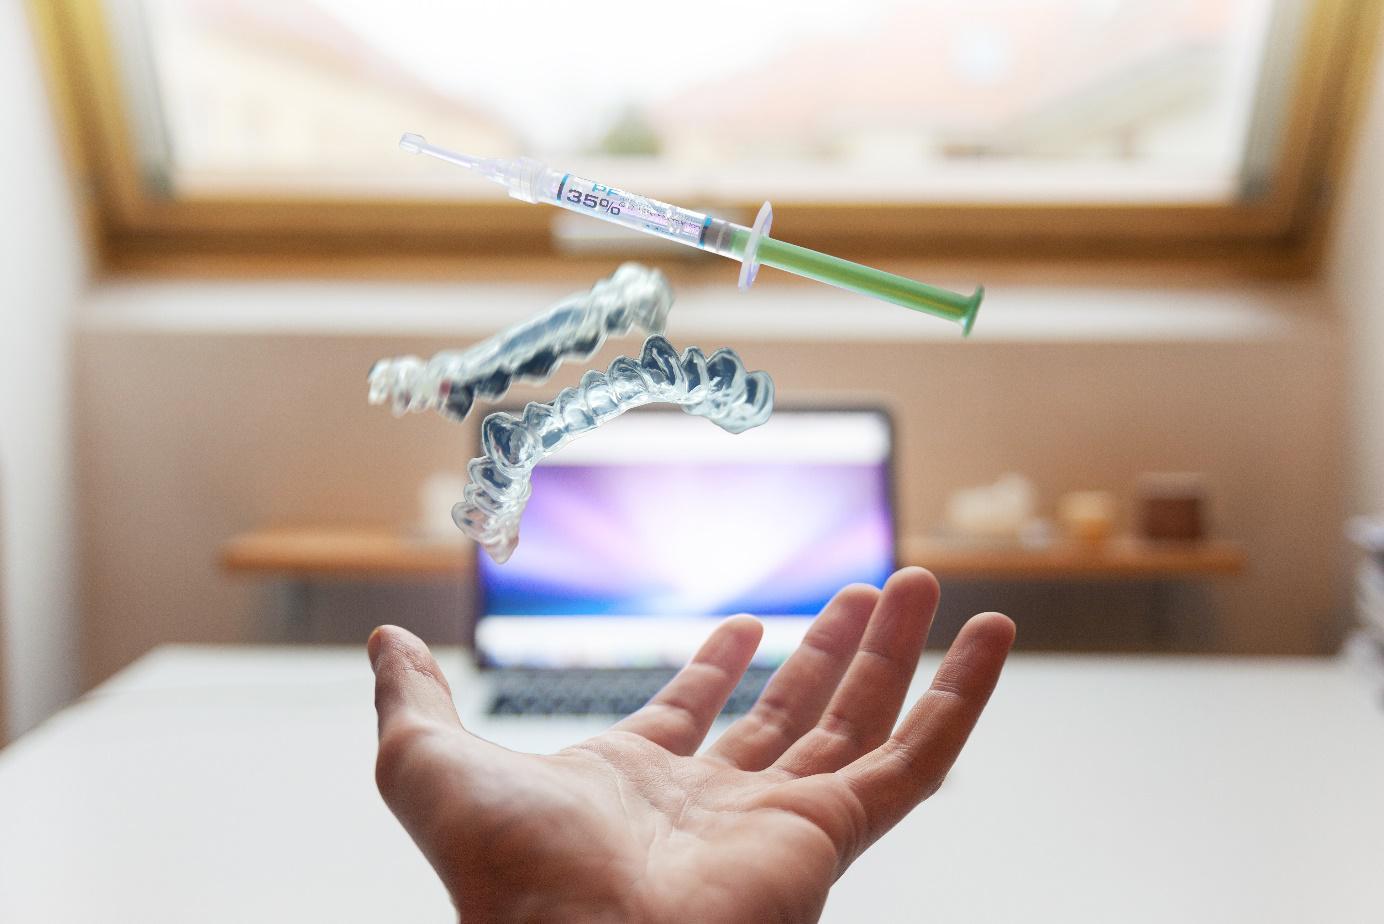 Ärztereport gibt Einblicke in die Zukunft des digitalen Gesundheitswesens